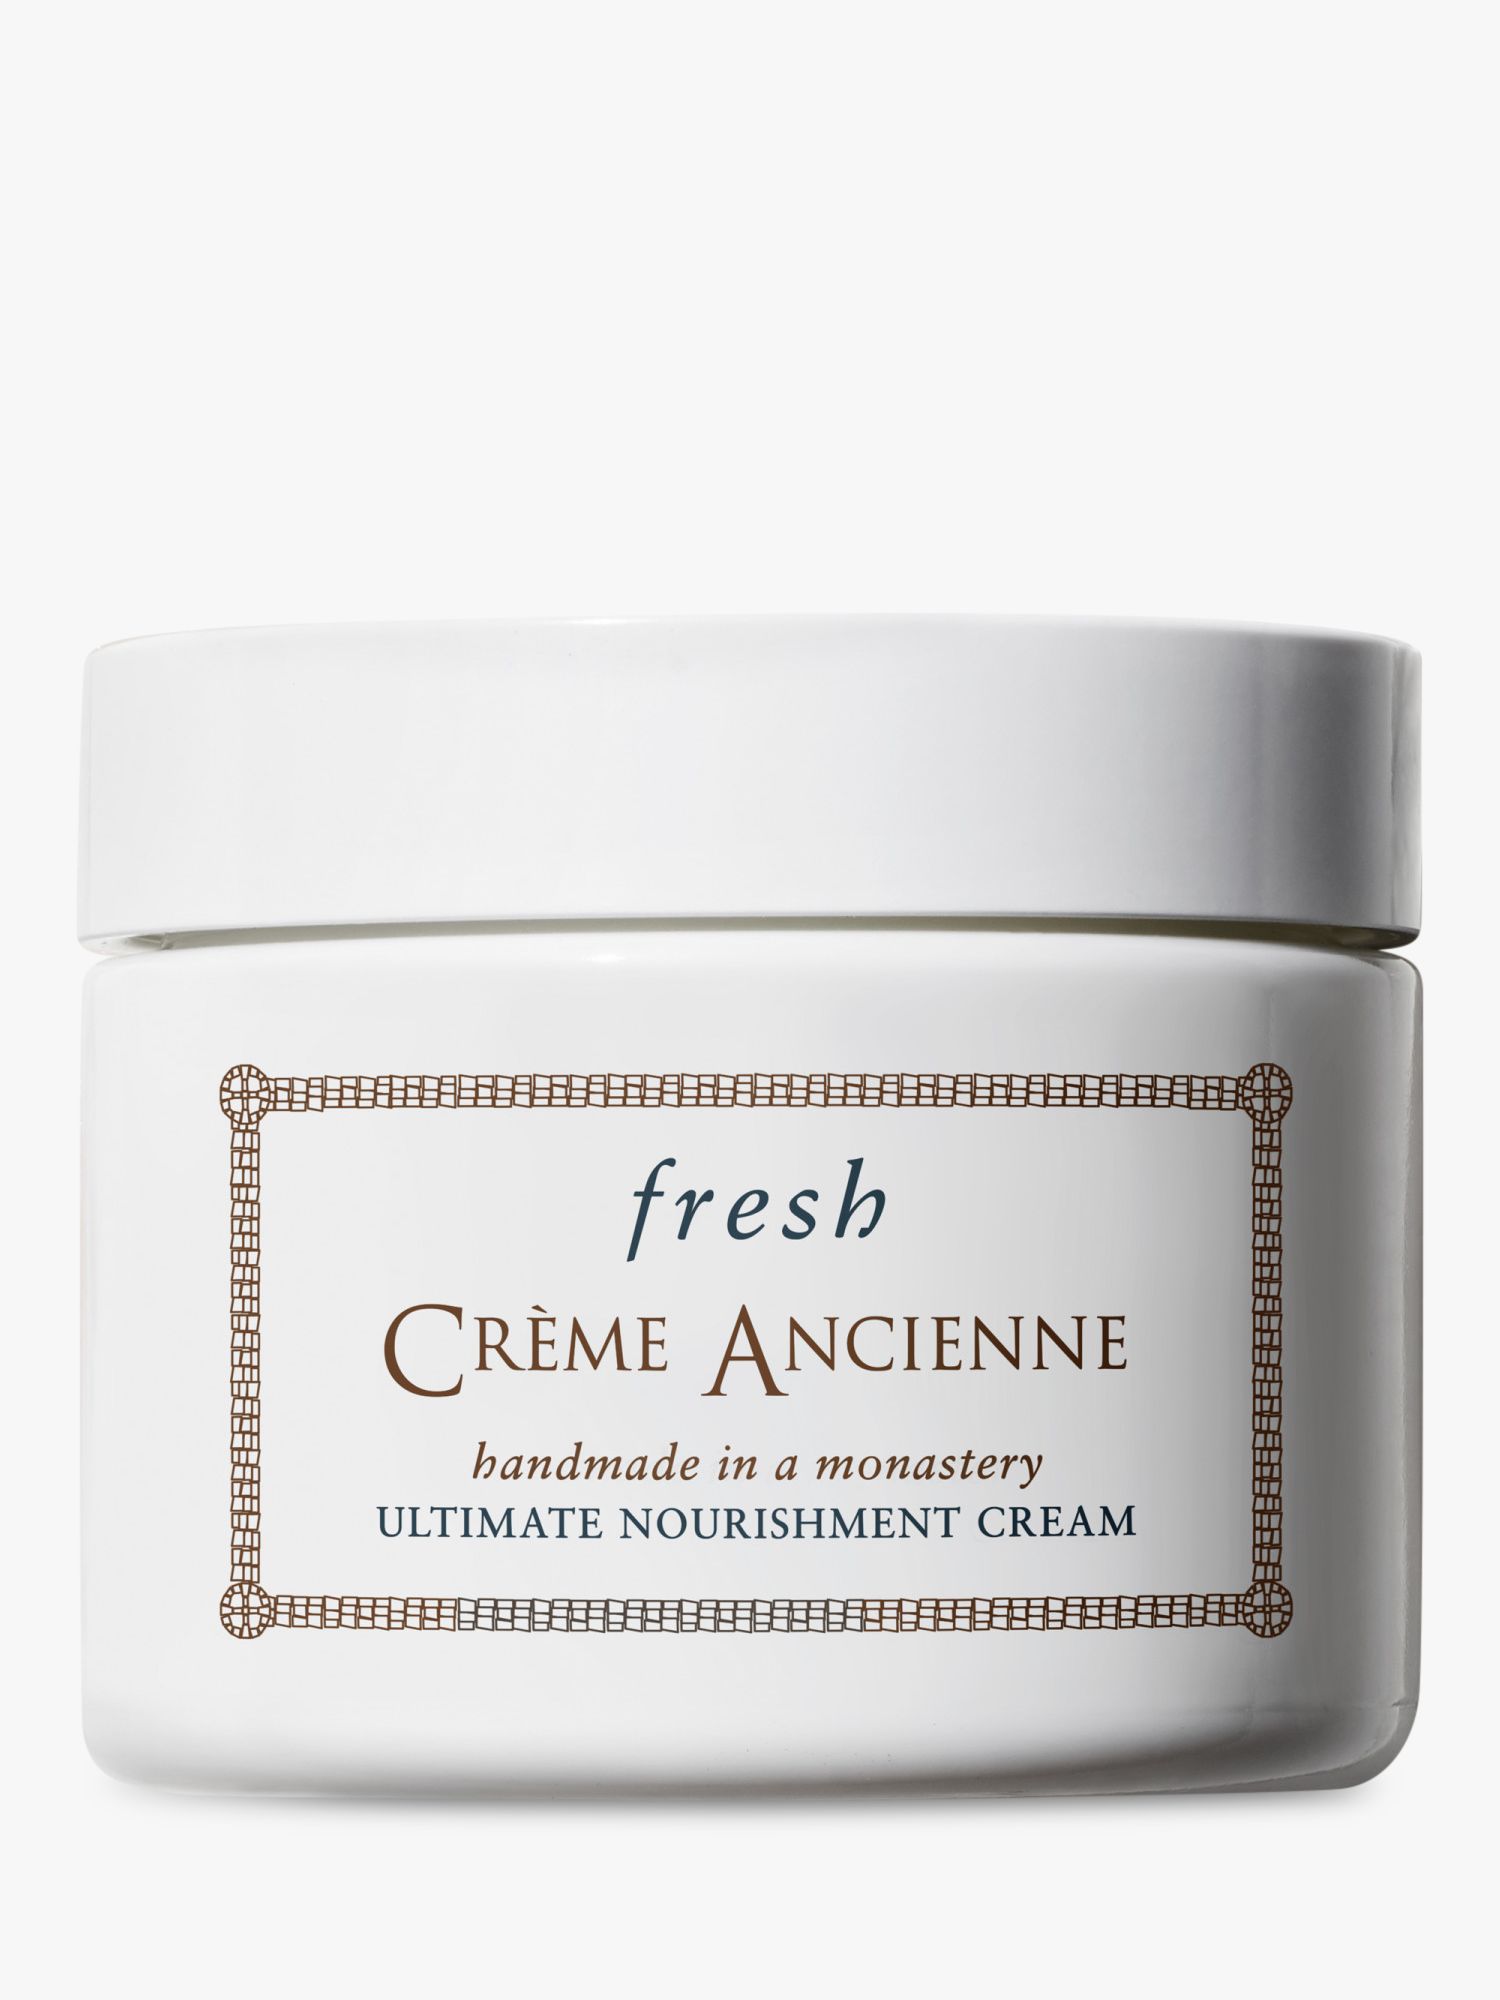 Fresh Crème Ancienne Ultimate Nourishment Cream, 30g 5